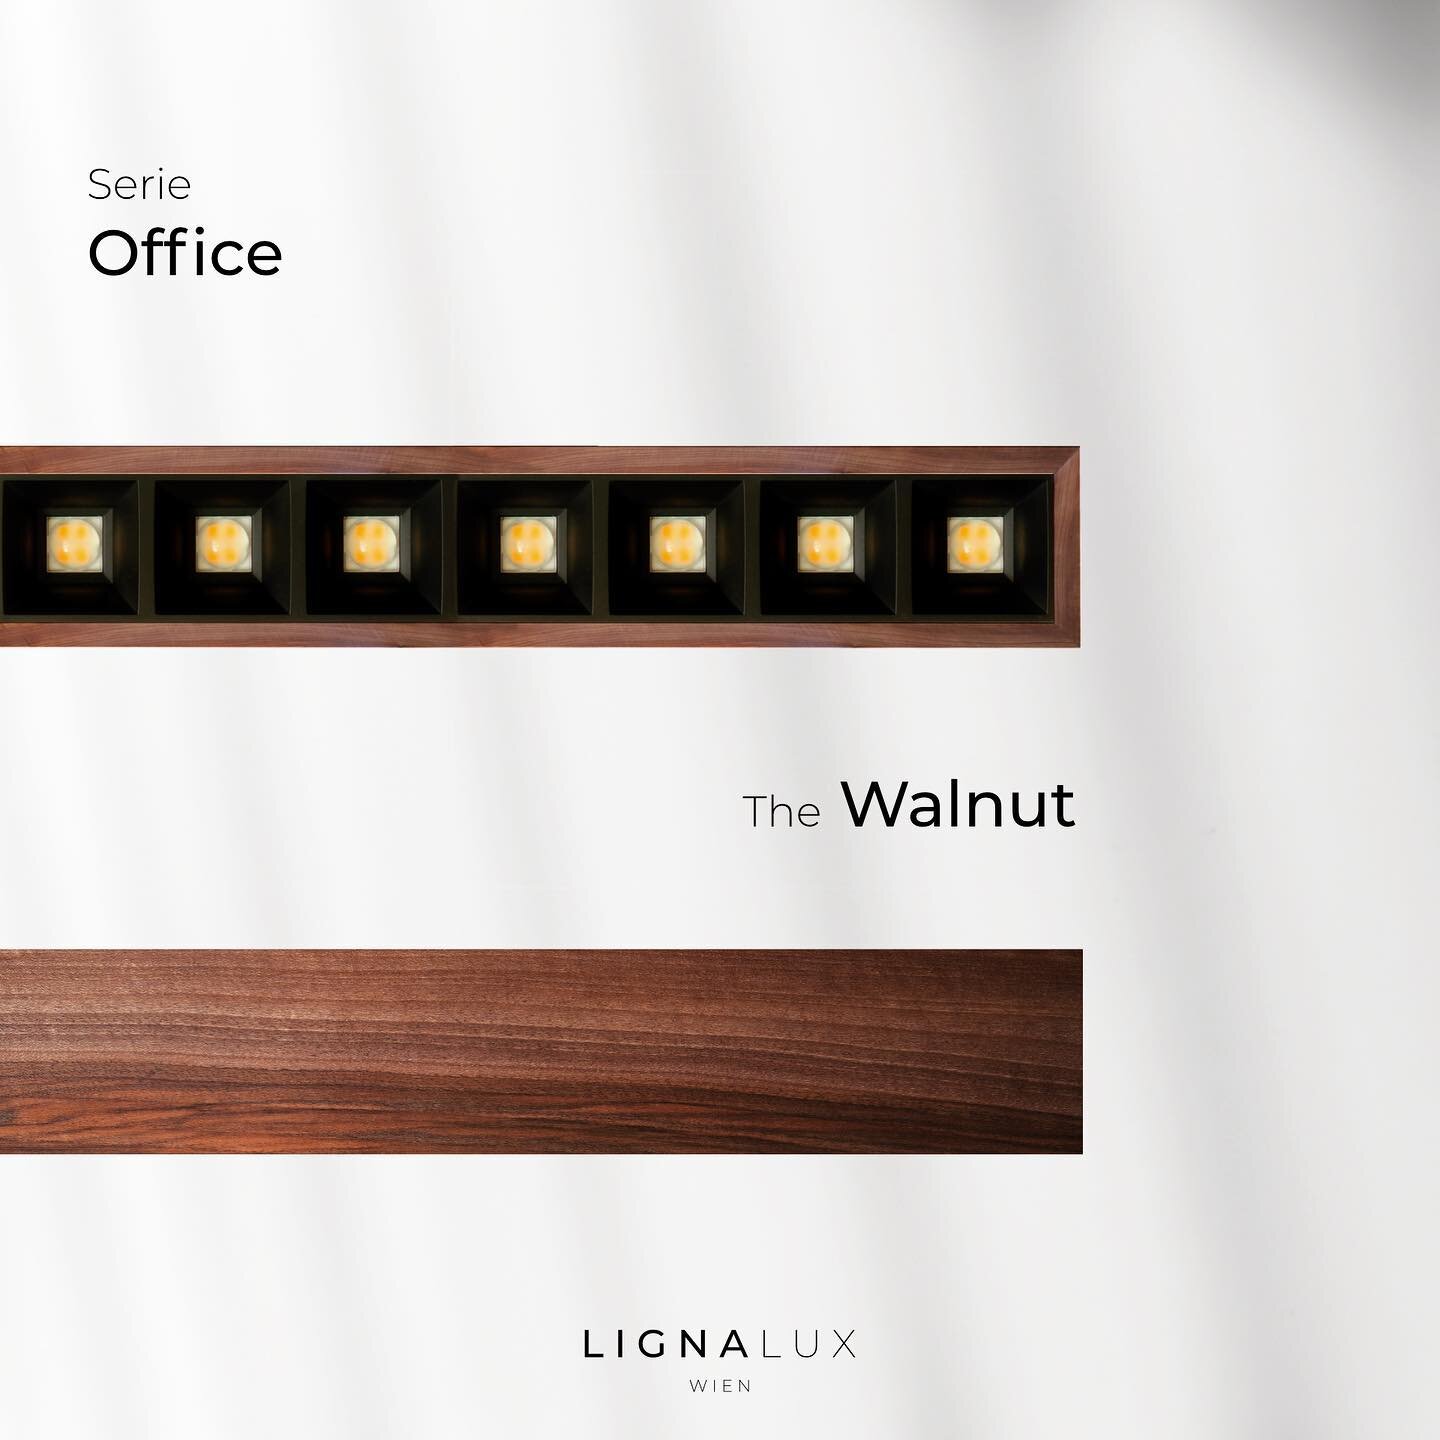 Unsere neue Leuchtenserie &quot;Office&quot; vereint moderne B&uuml;robeleuchtung mit  schlicht-sch&ouml;nem Design und sorgt f&uuml;r nat&uuml;rliches Wohlbefinden am Arbeitsplatz. 💡✨

Die LED-Pendelleuchten aus Vollholz sorgen mit Raster und Linse